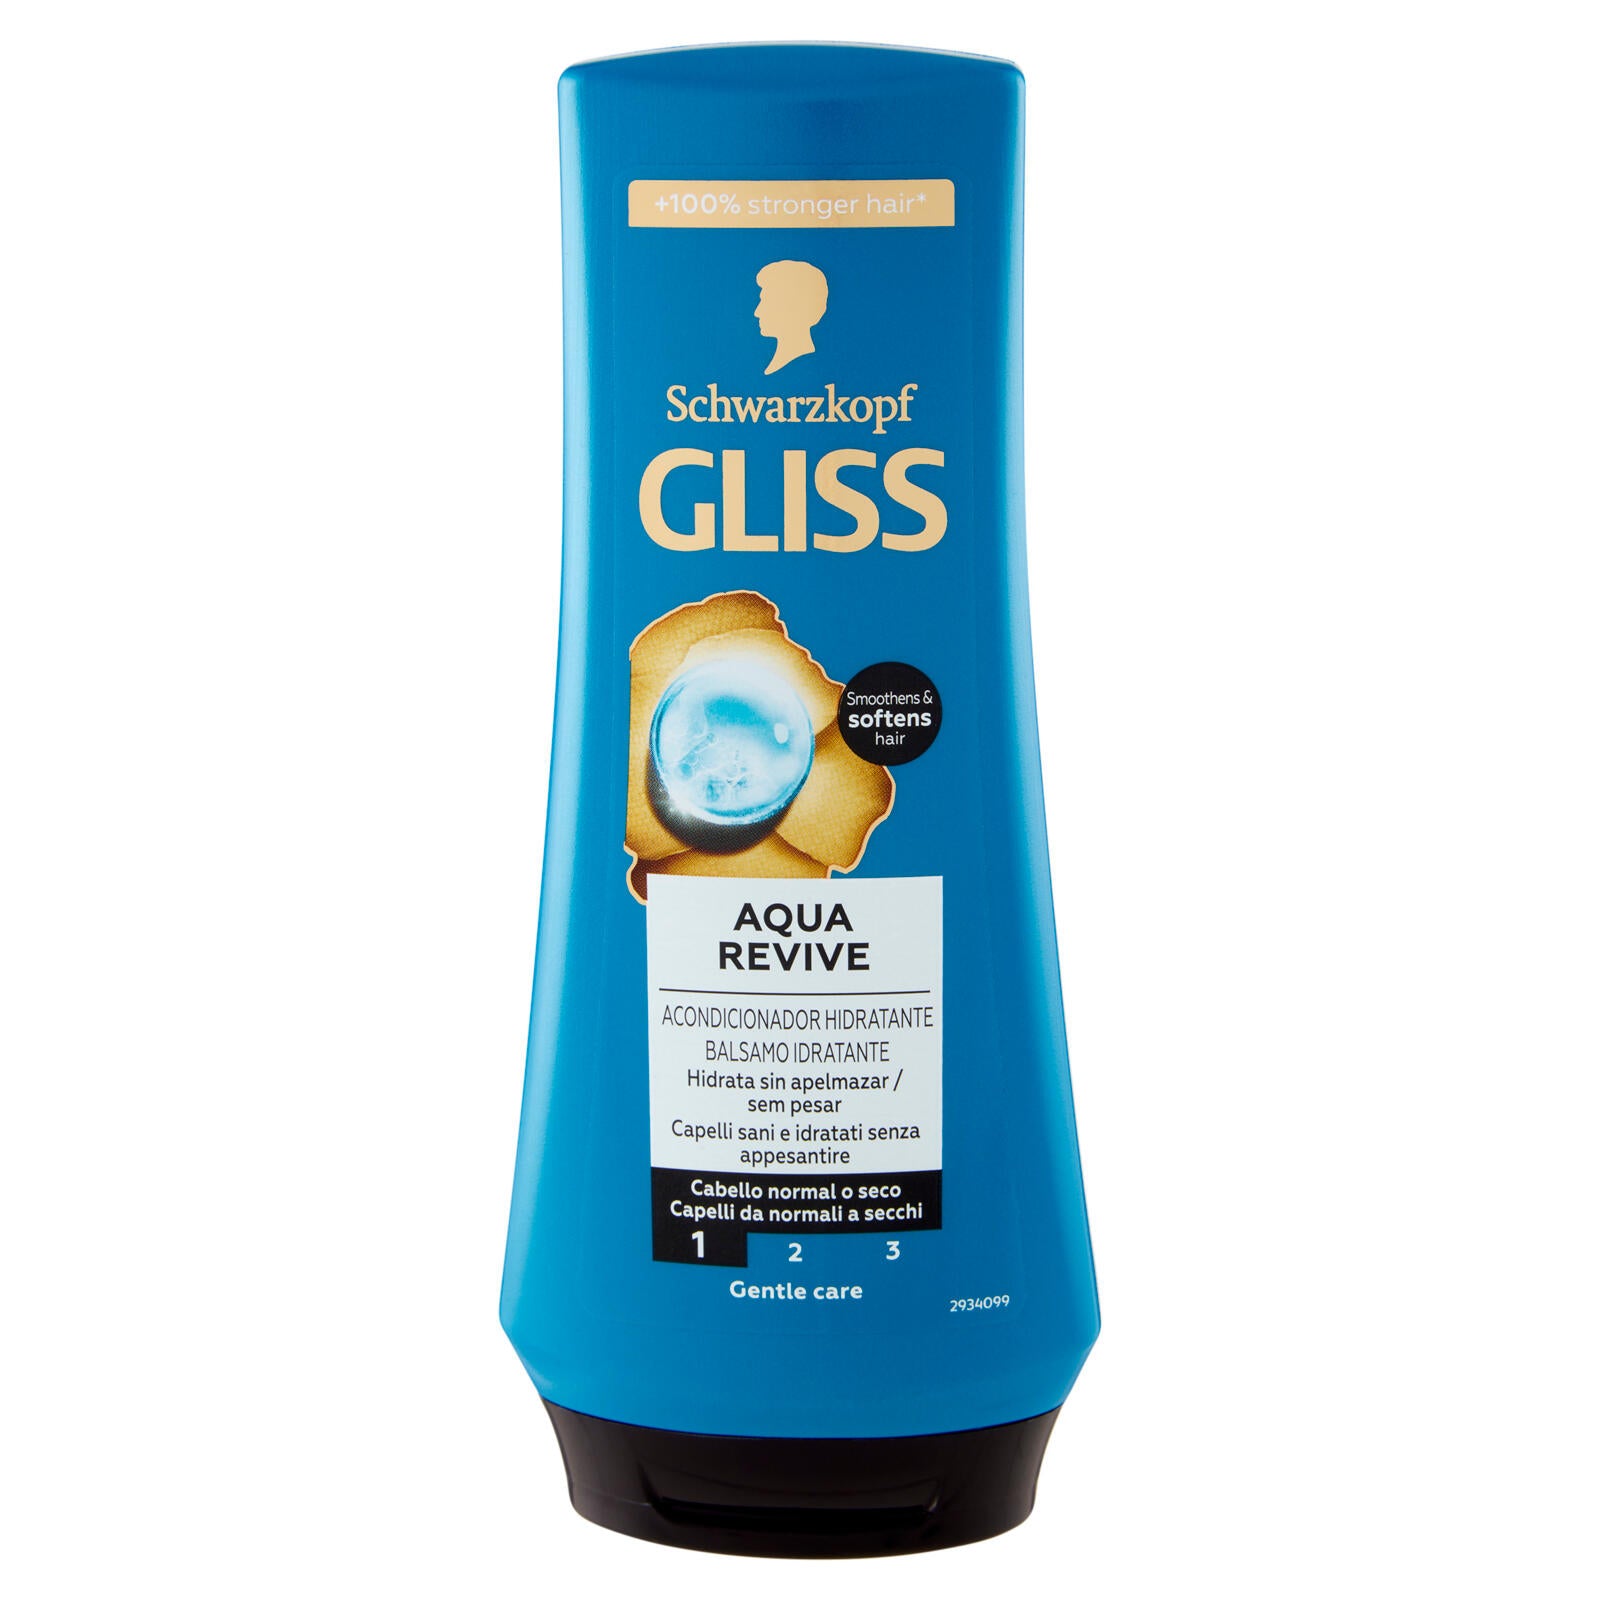 Gliss Aqua Revive Balsamo Idratante 200 ml